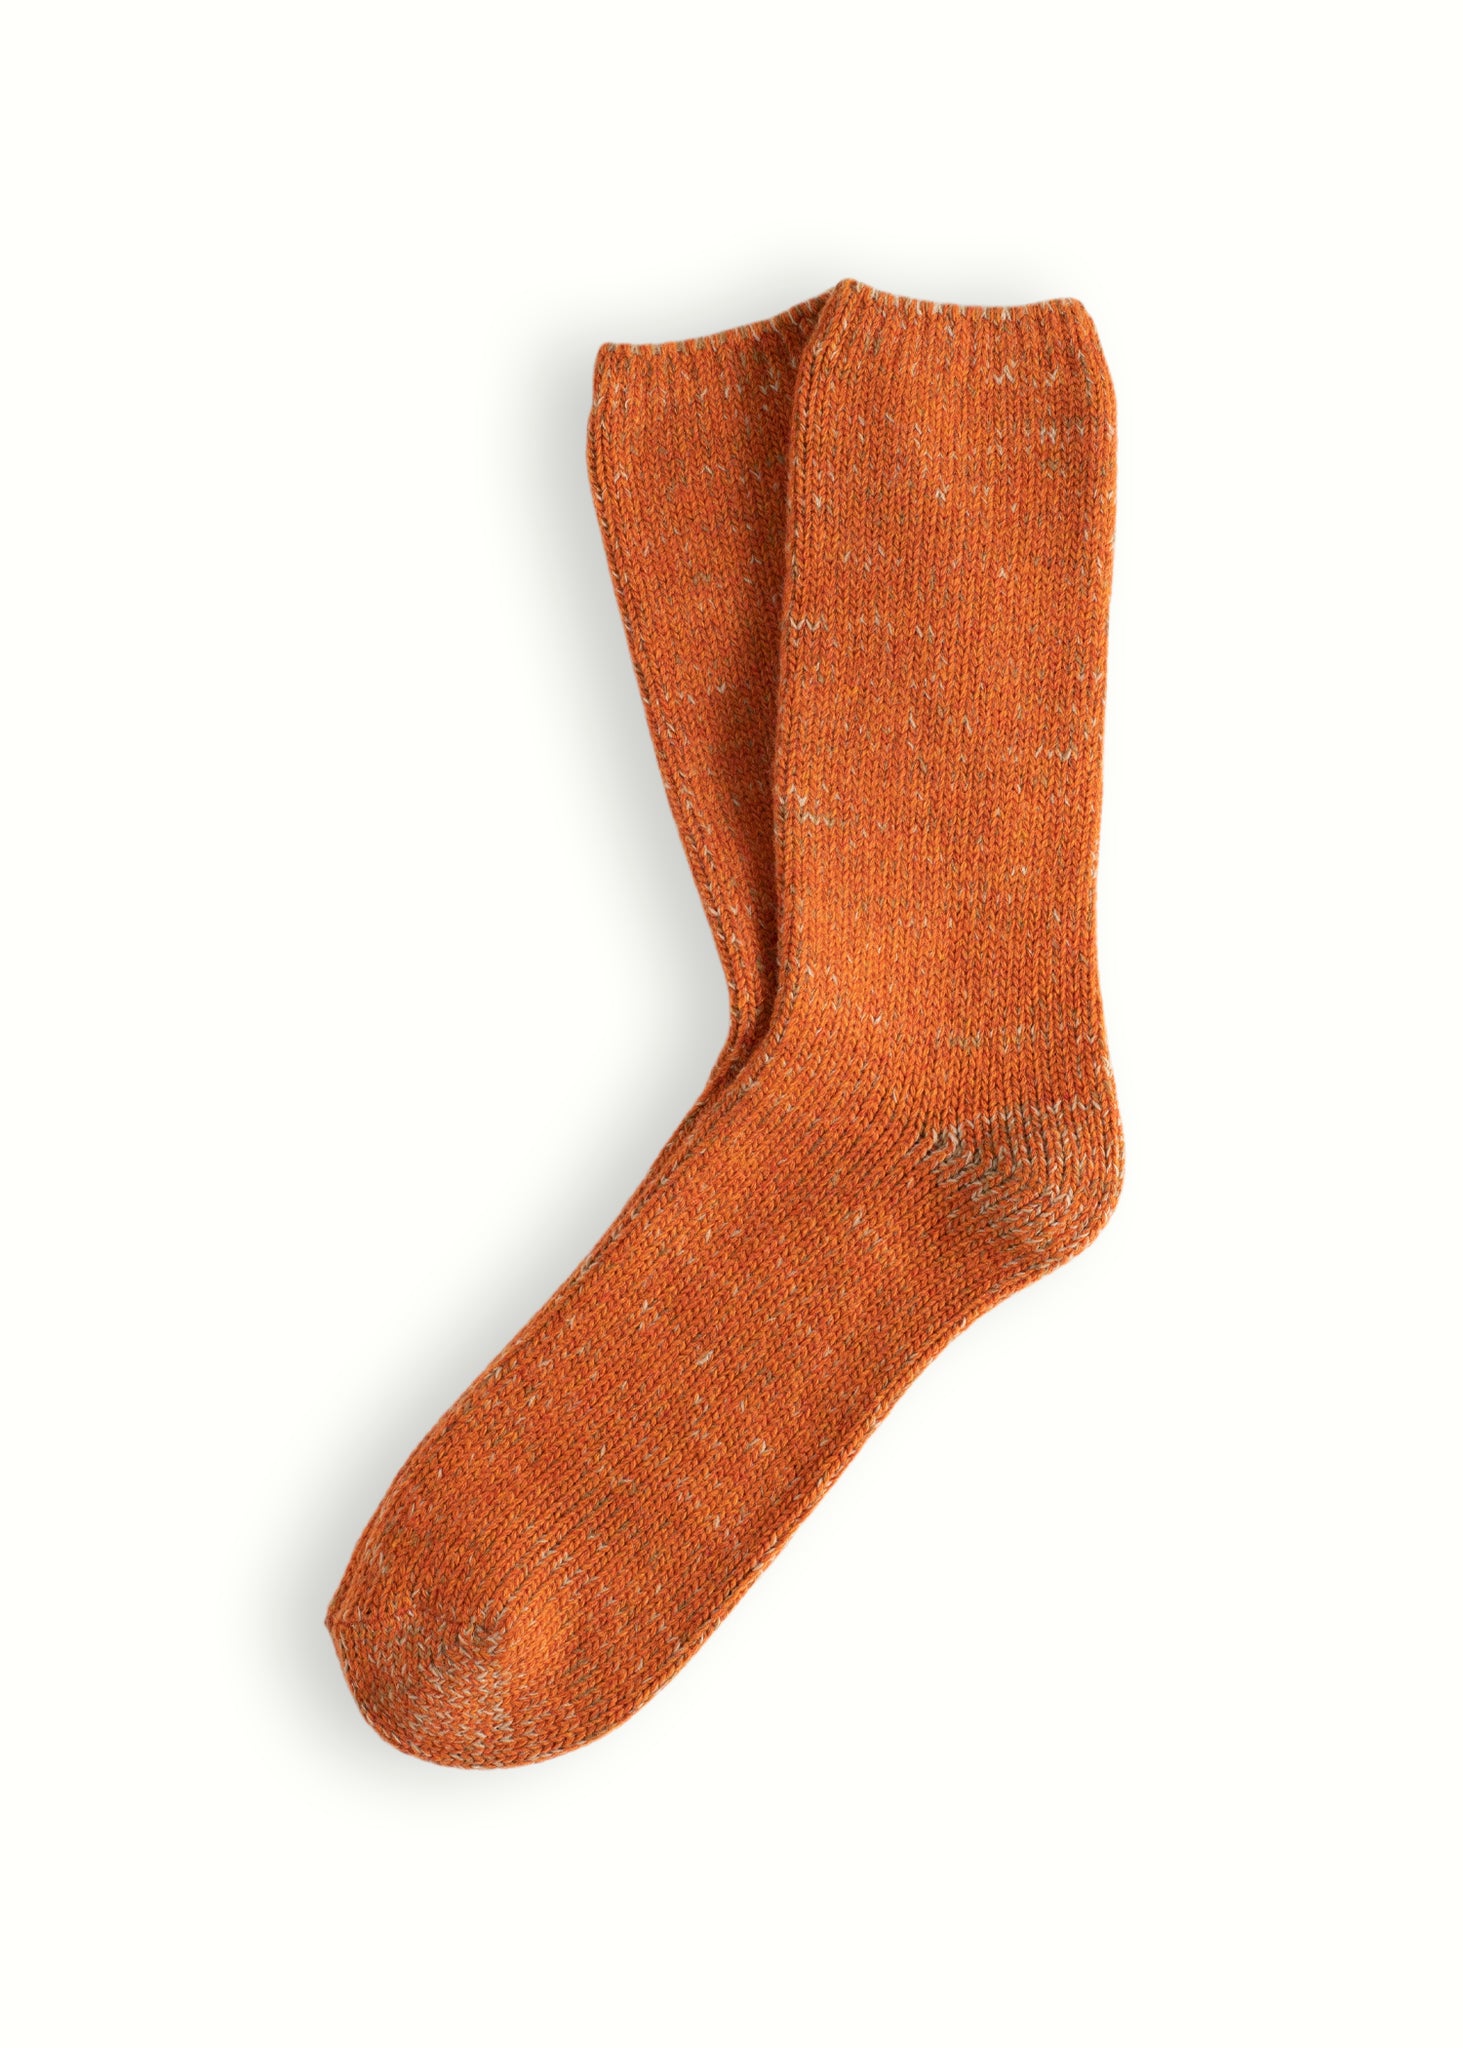 Thunders Love Wool Recycled Orange Socks